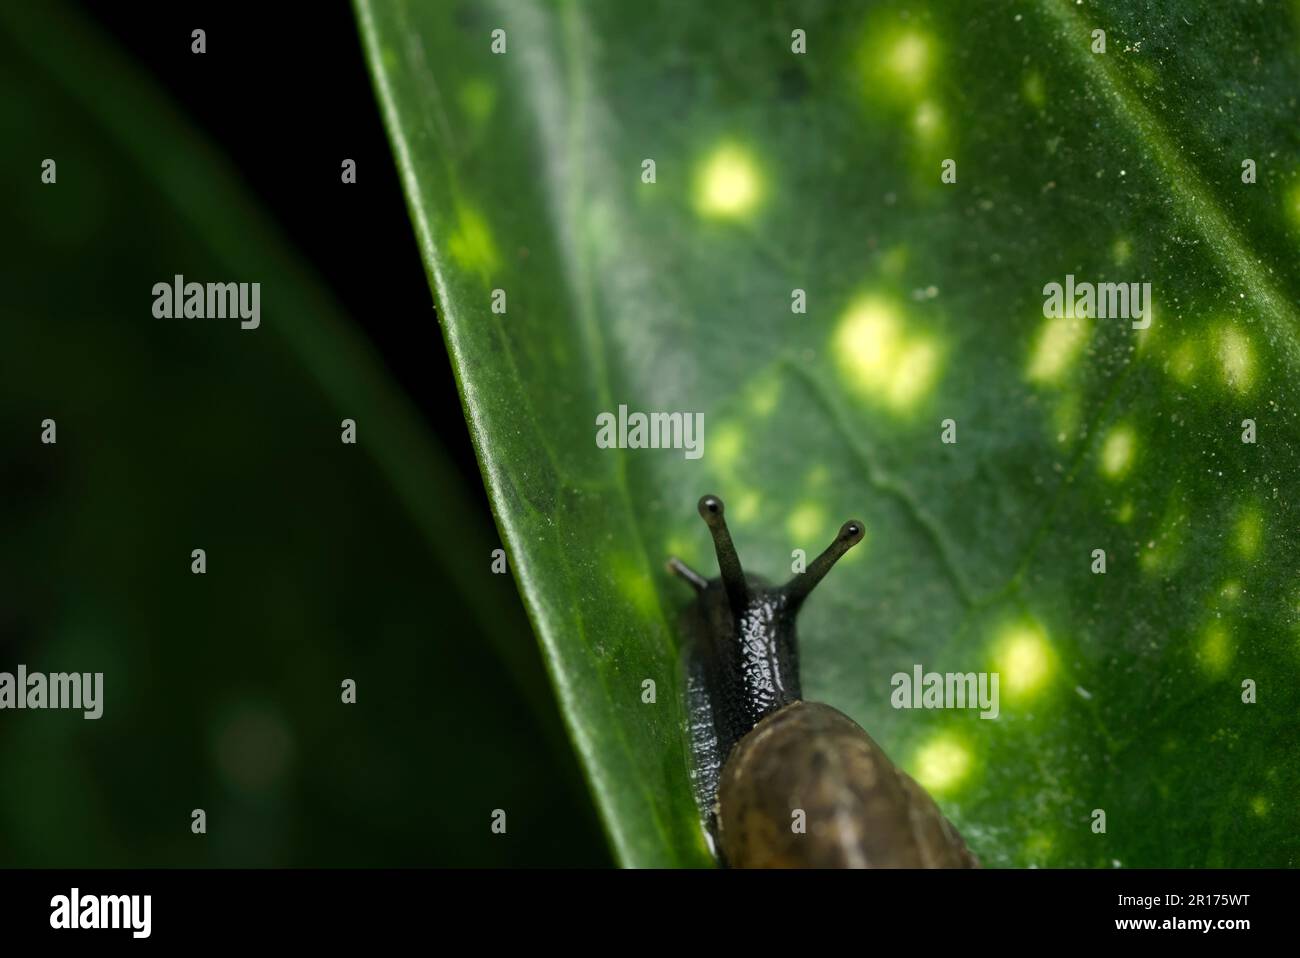 Lumaca a terra singola (Arianta arbustorum) che si aggirano su una foglia in un giardino, molluschi, macrofotografia, biodiversità Foto Stock